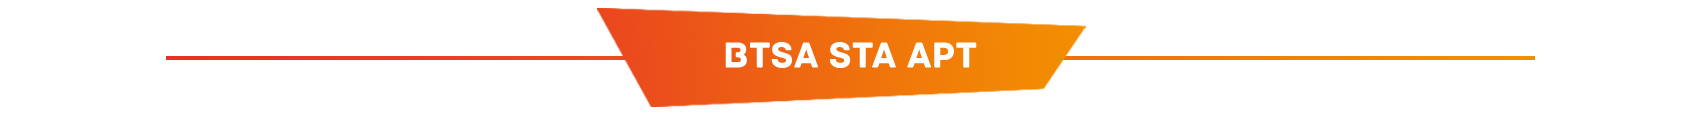 BTSA BioQualim / BTSA STA